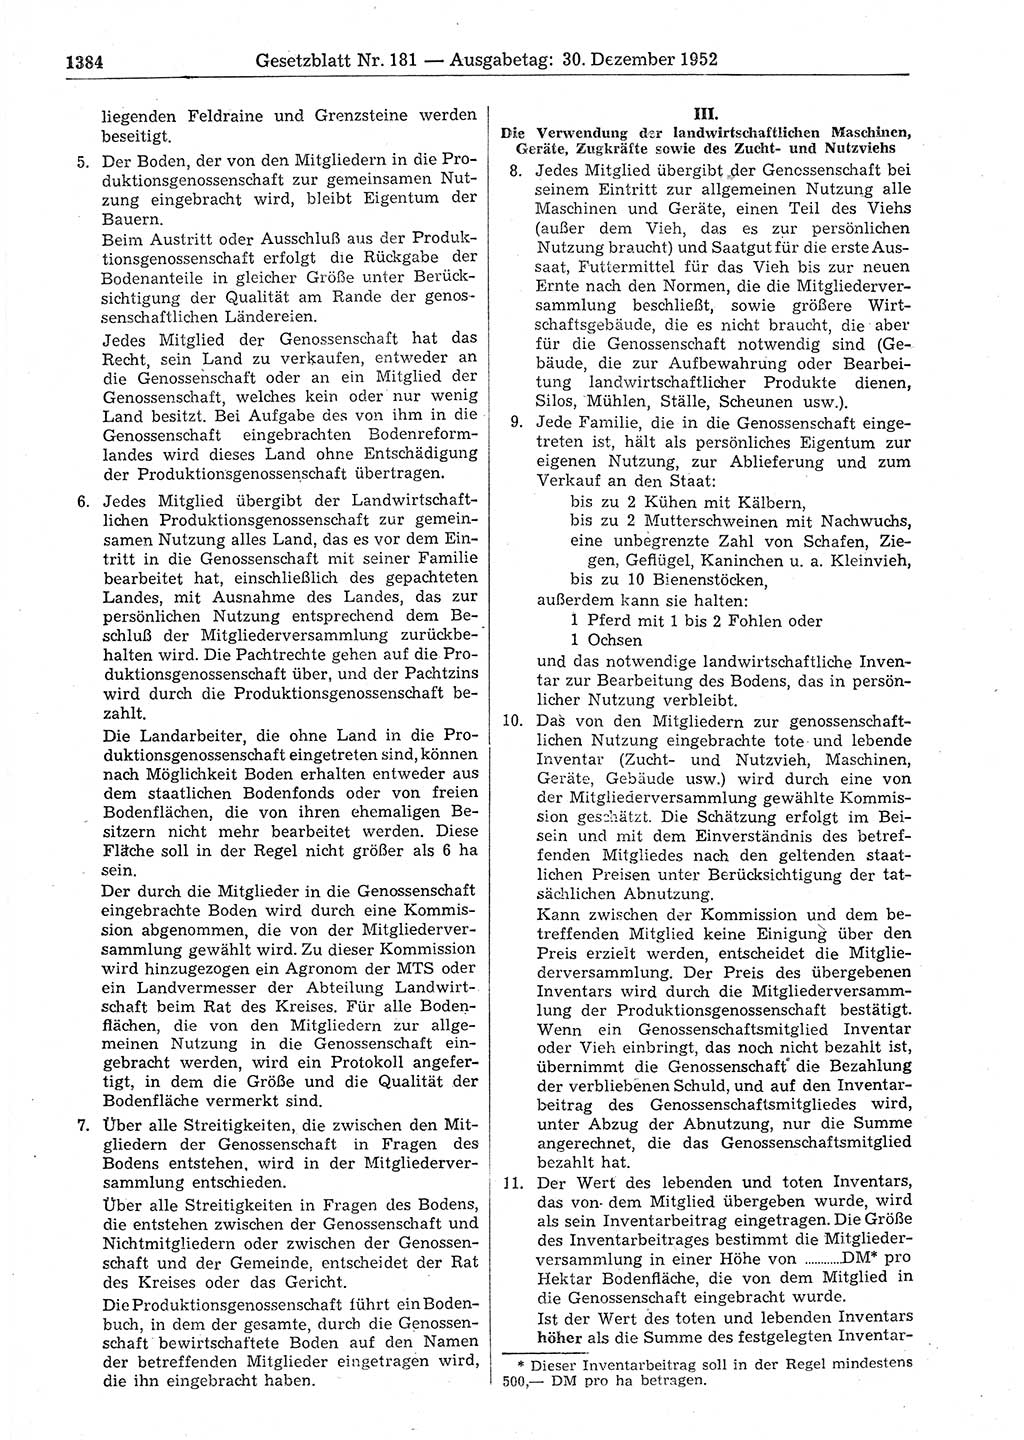 Gesetzblatt (GBl.) der Deutschen Demokratischen Republik (DDR) 1952, Seite 1384 (GBl. DDR 1952, S. 1384)